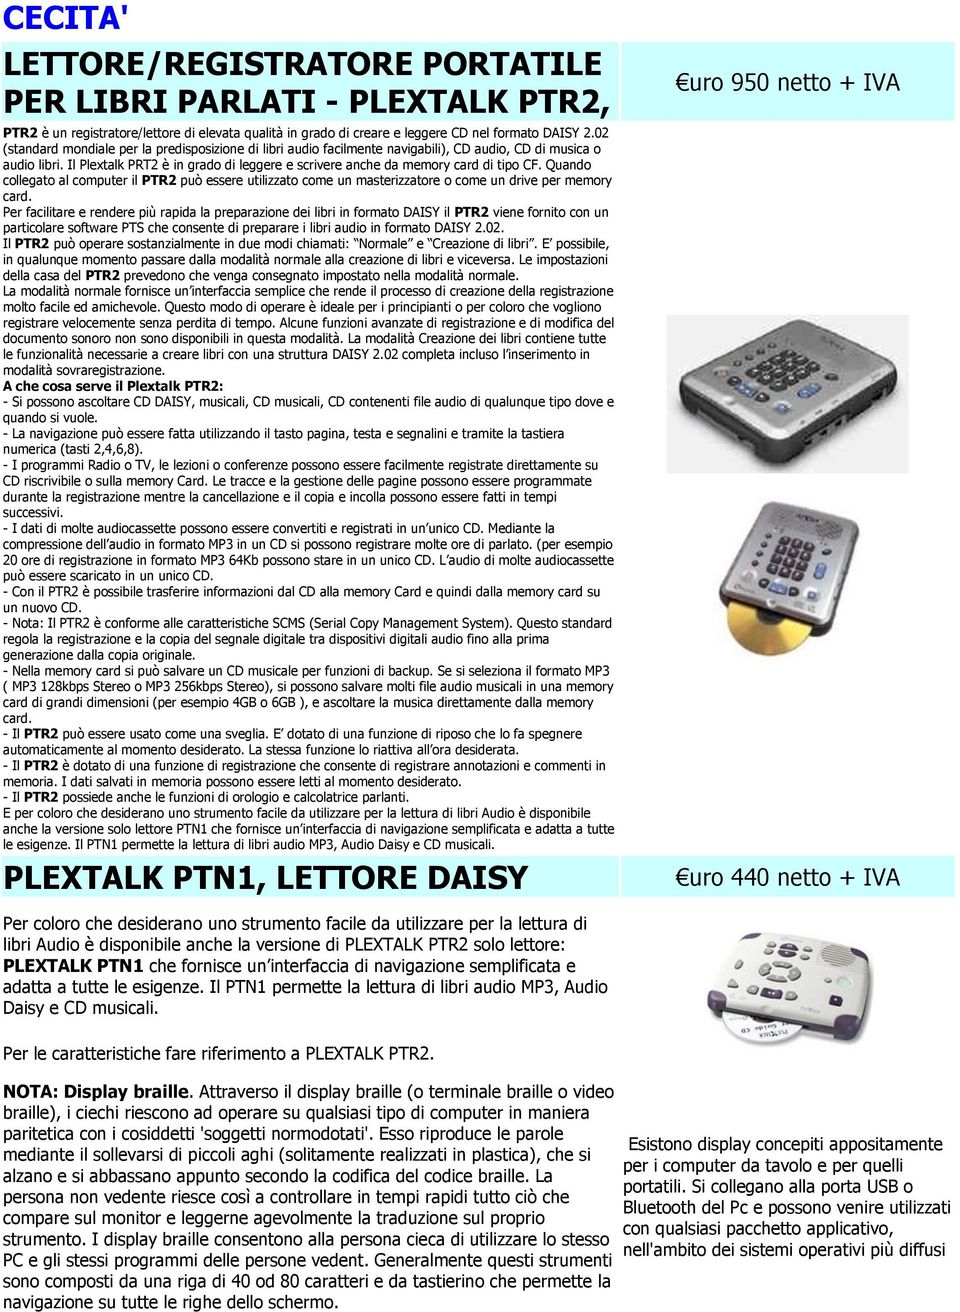 Il Plextalk PRT2 è in grado di leggere e scrivere anche da memory card di tipo CF. Quando collegato al computer il PTR2 può essere utilizzato come un masterizzatore o come un drive per memory card.